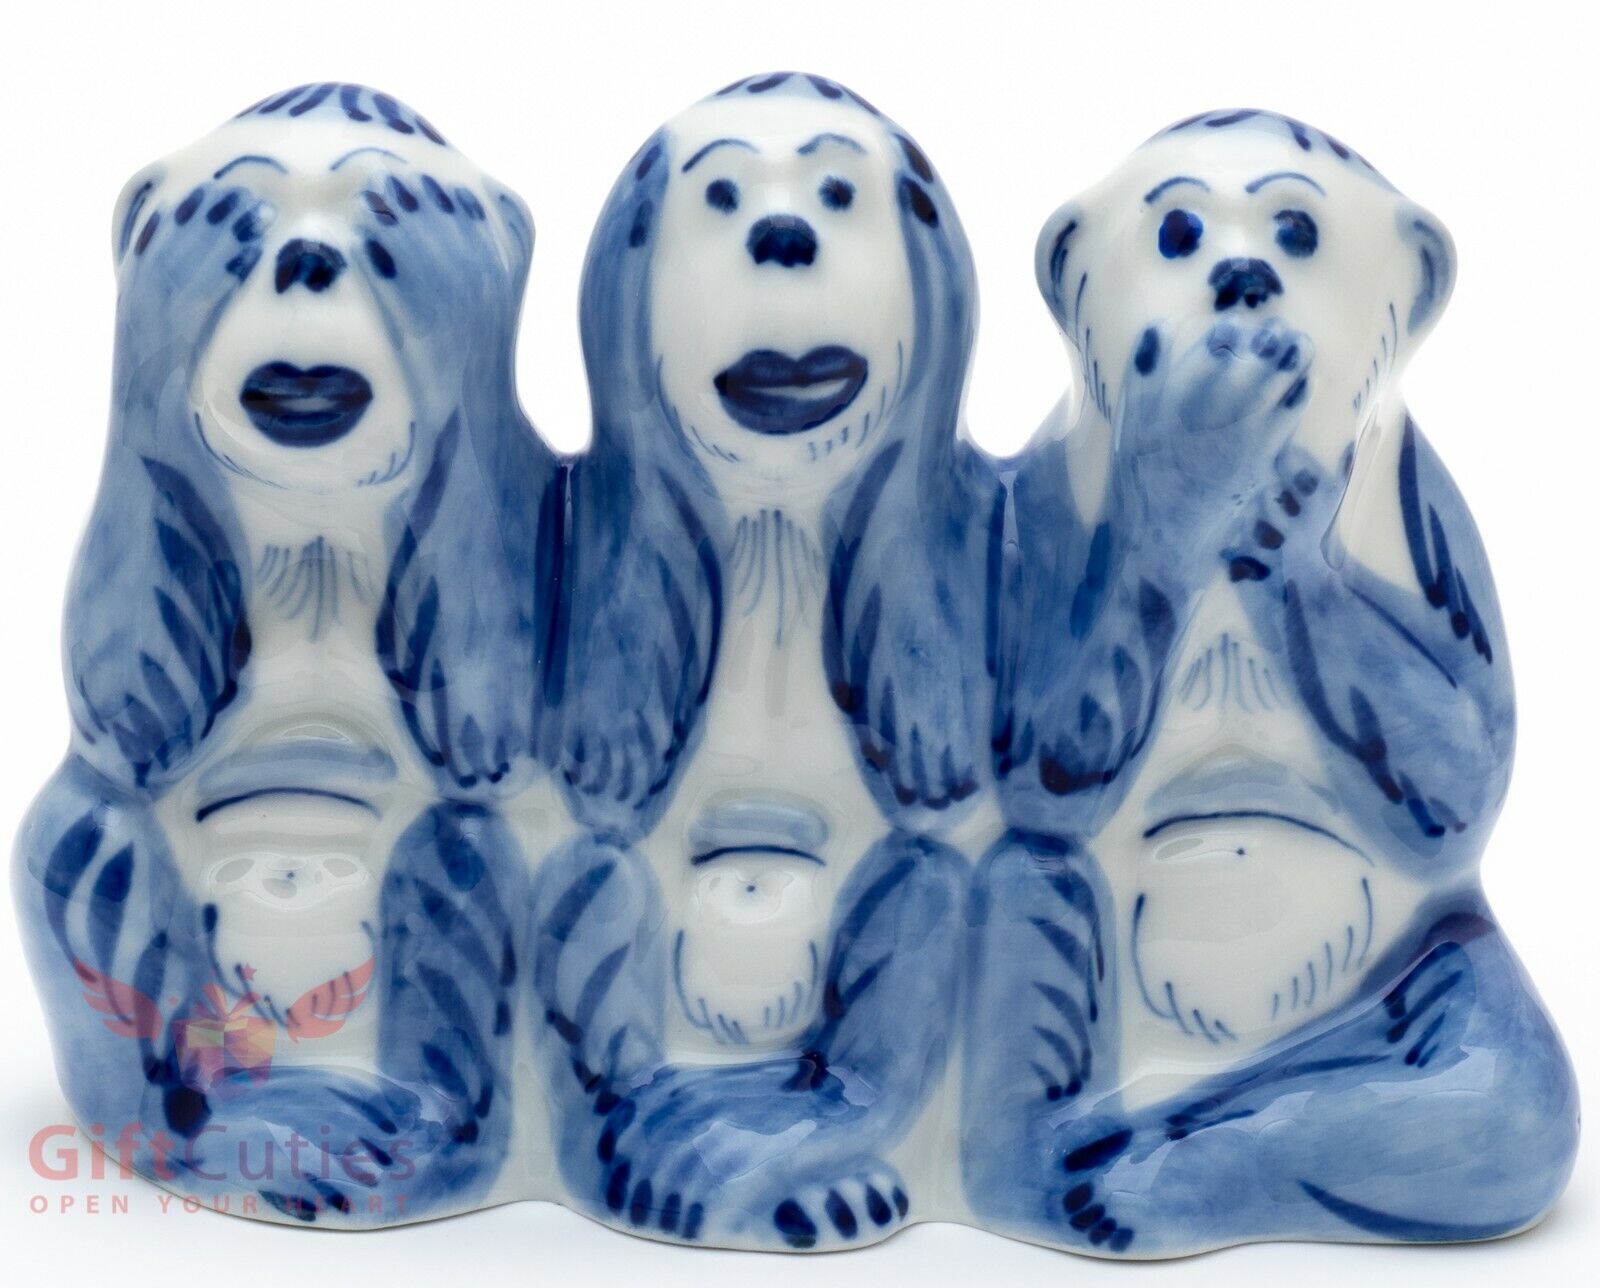 Gzhel 3 Three wise monkeys see hear speak no evil porcelain figurine